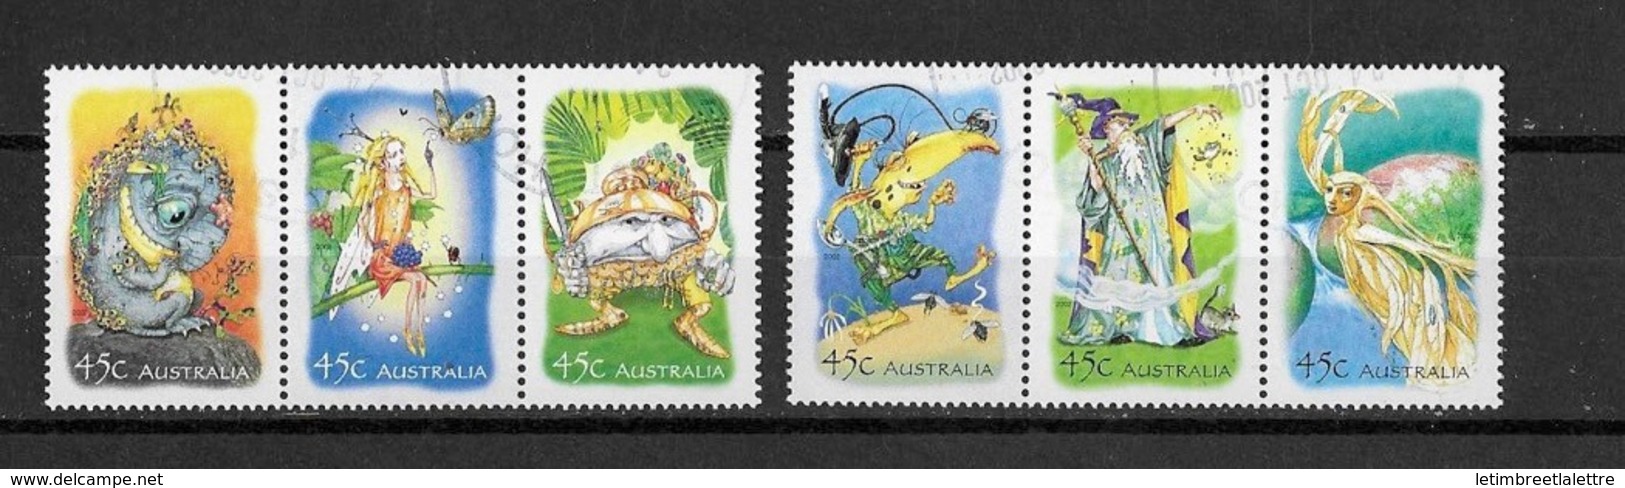 Australie N°2059 à 2064** - Mint Stamps